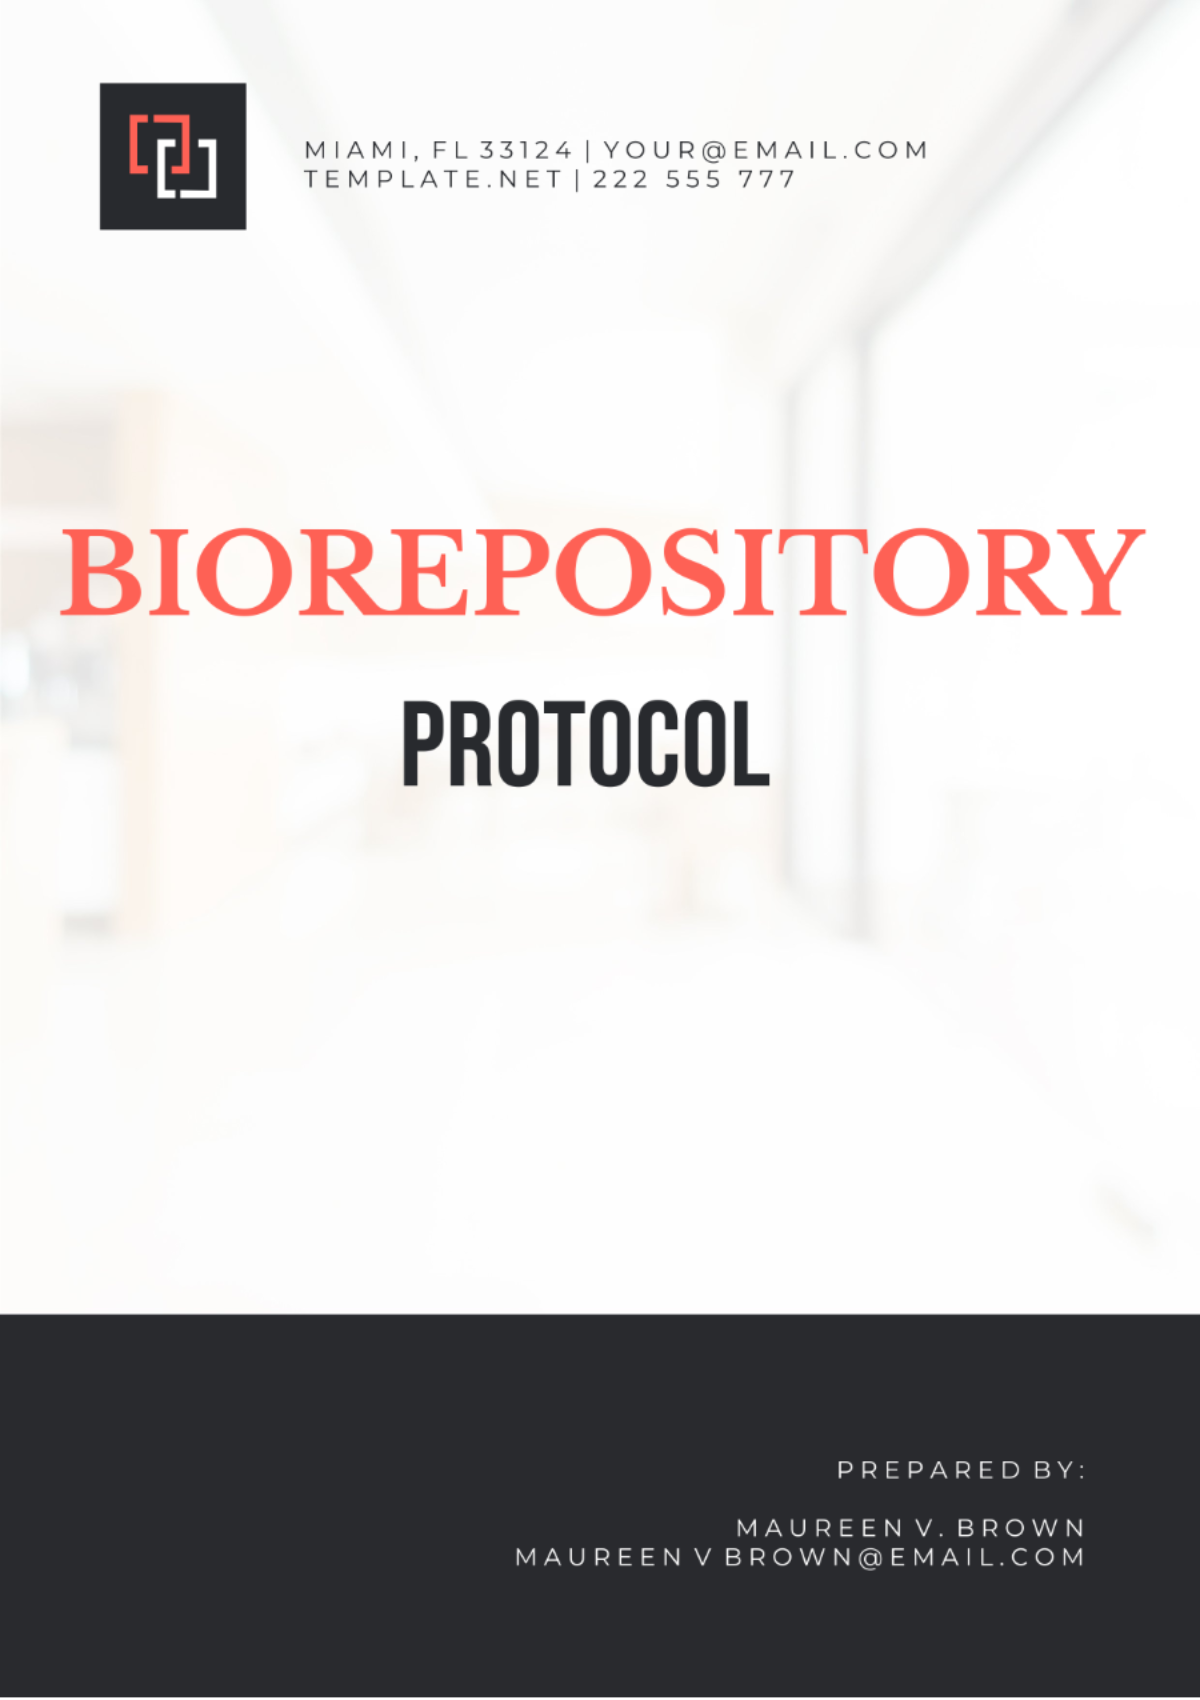 Biorepository Protocol Template